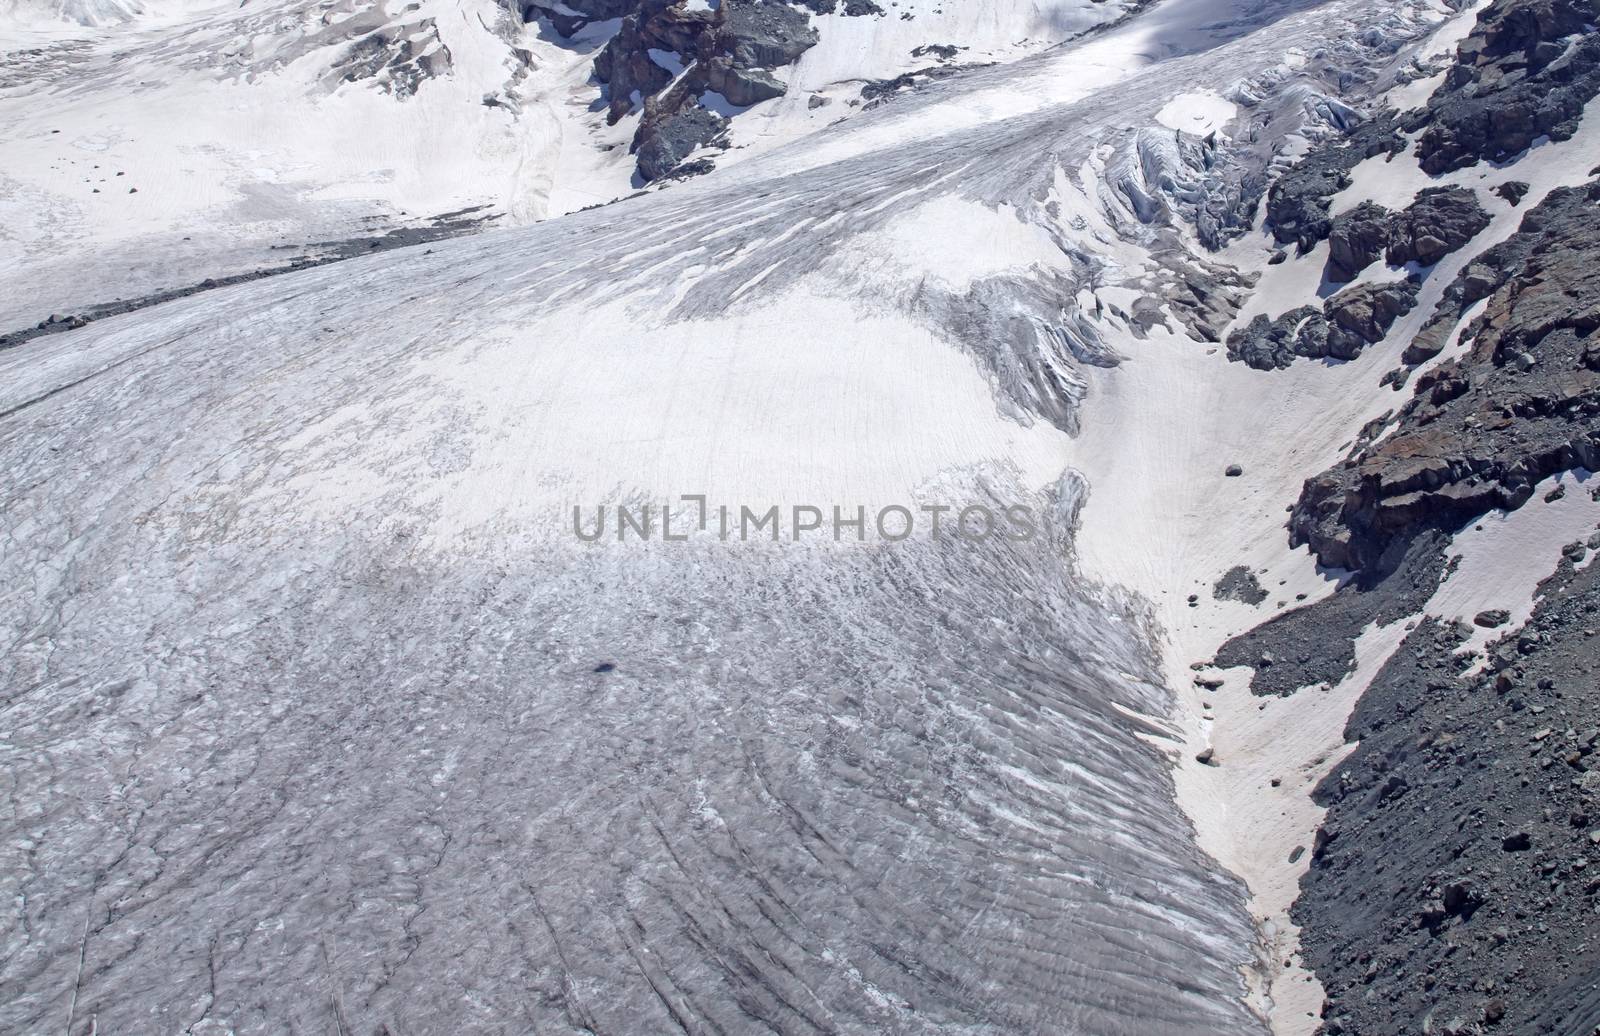 Closeup of a glacier in the Alps